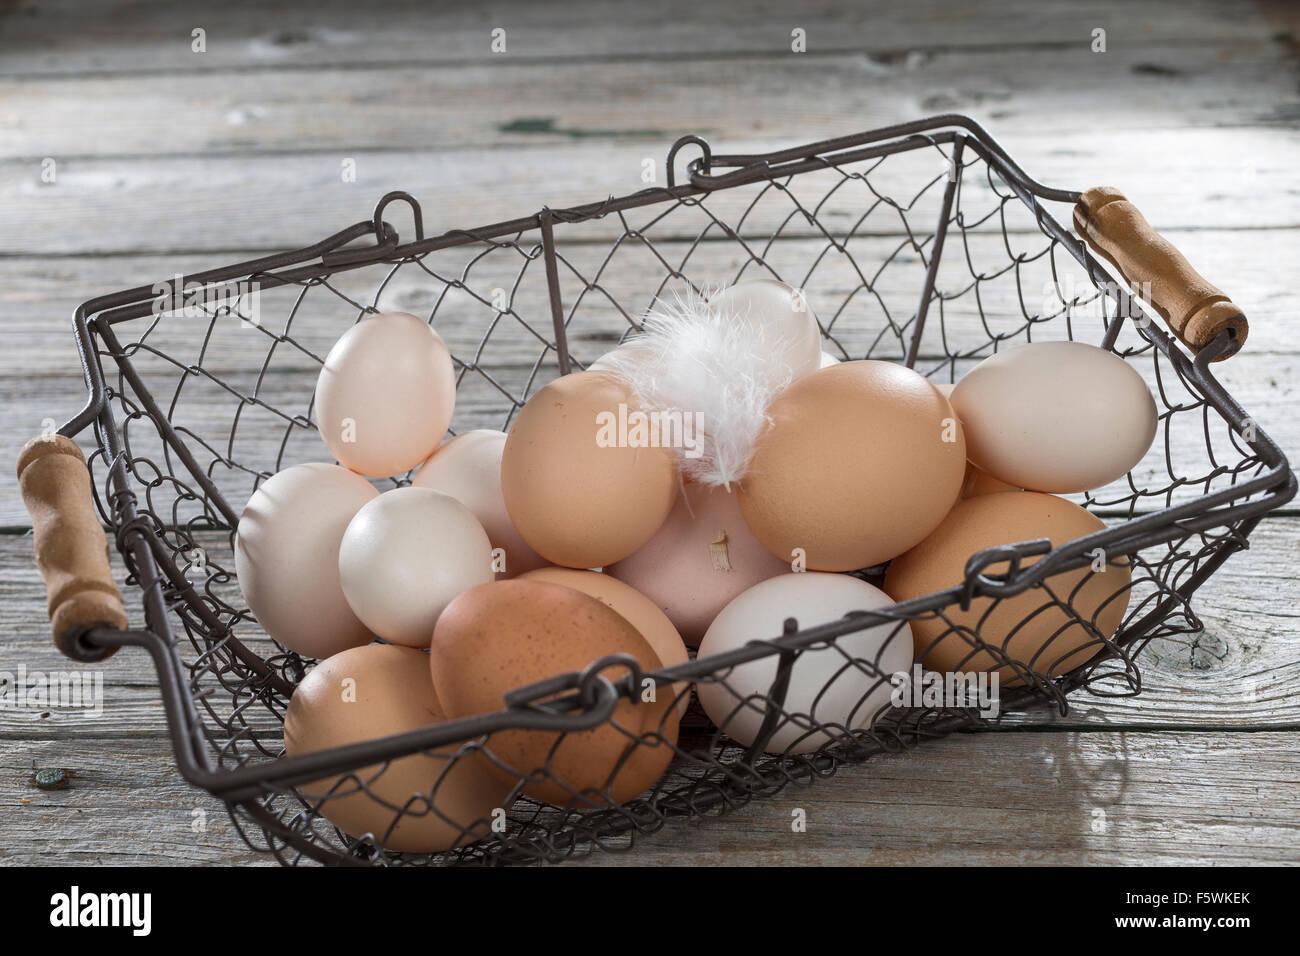 Hen's egg, hen's eggs, Hühnereier, Hühnerei, Eier, Ei, glückliche Eier, freilaufende Hühner, Bioeier, Zwerghuhn, Zwerghühner Stock Photo